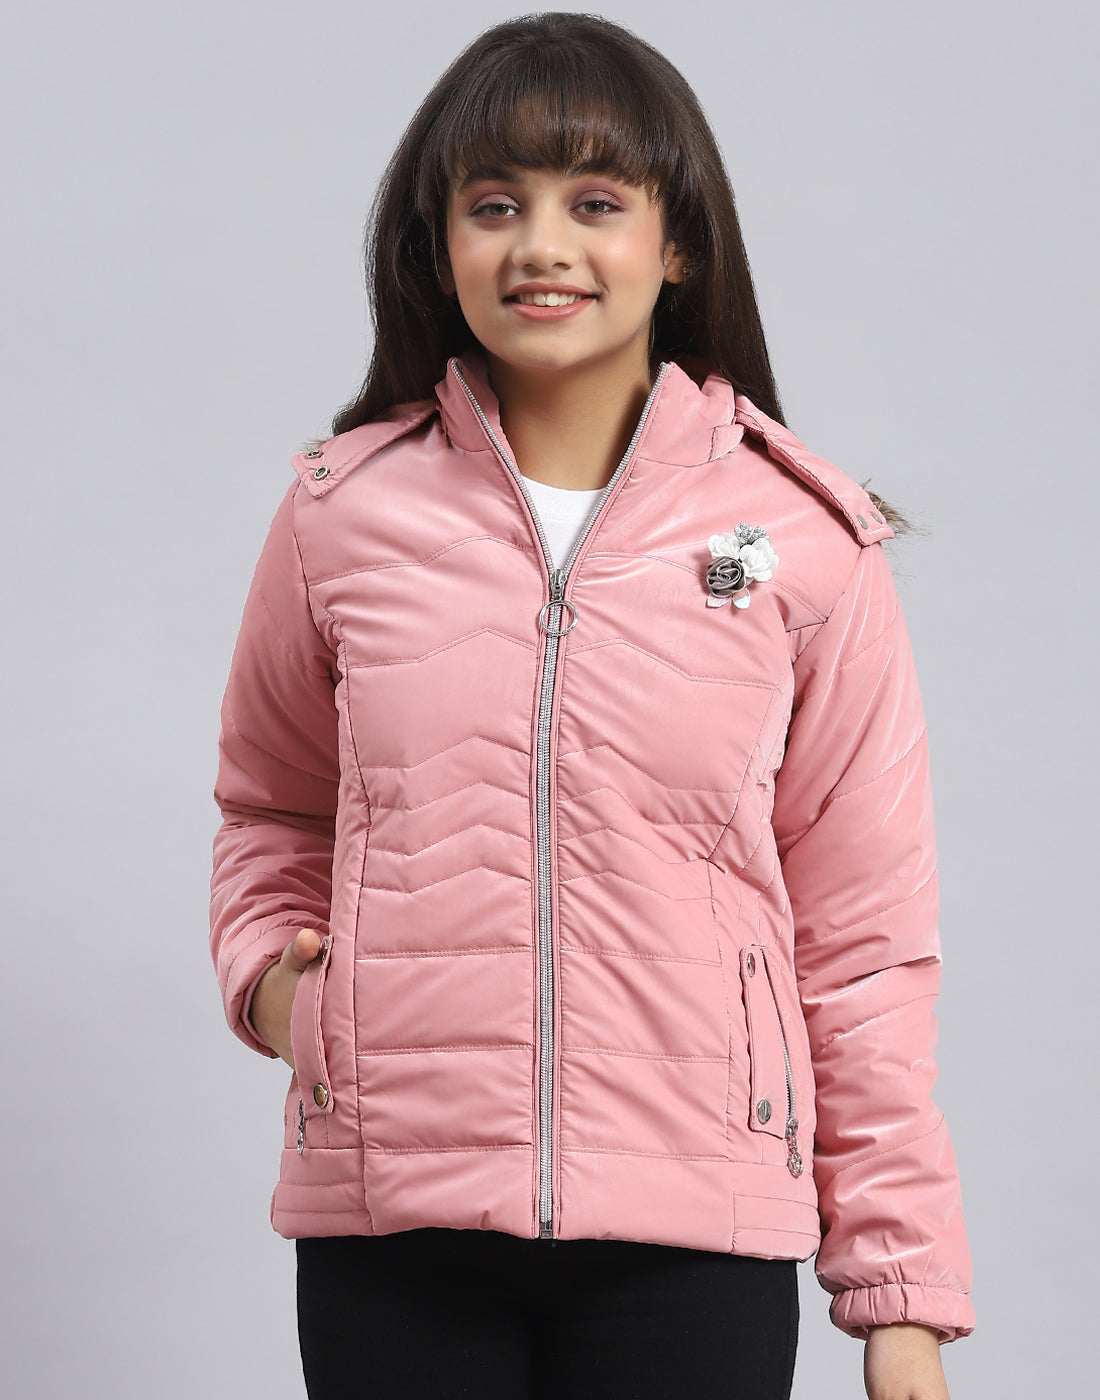 MAYORAL winter jacket Pink for girls | NICKIS.com